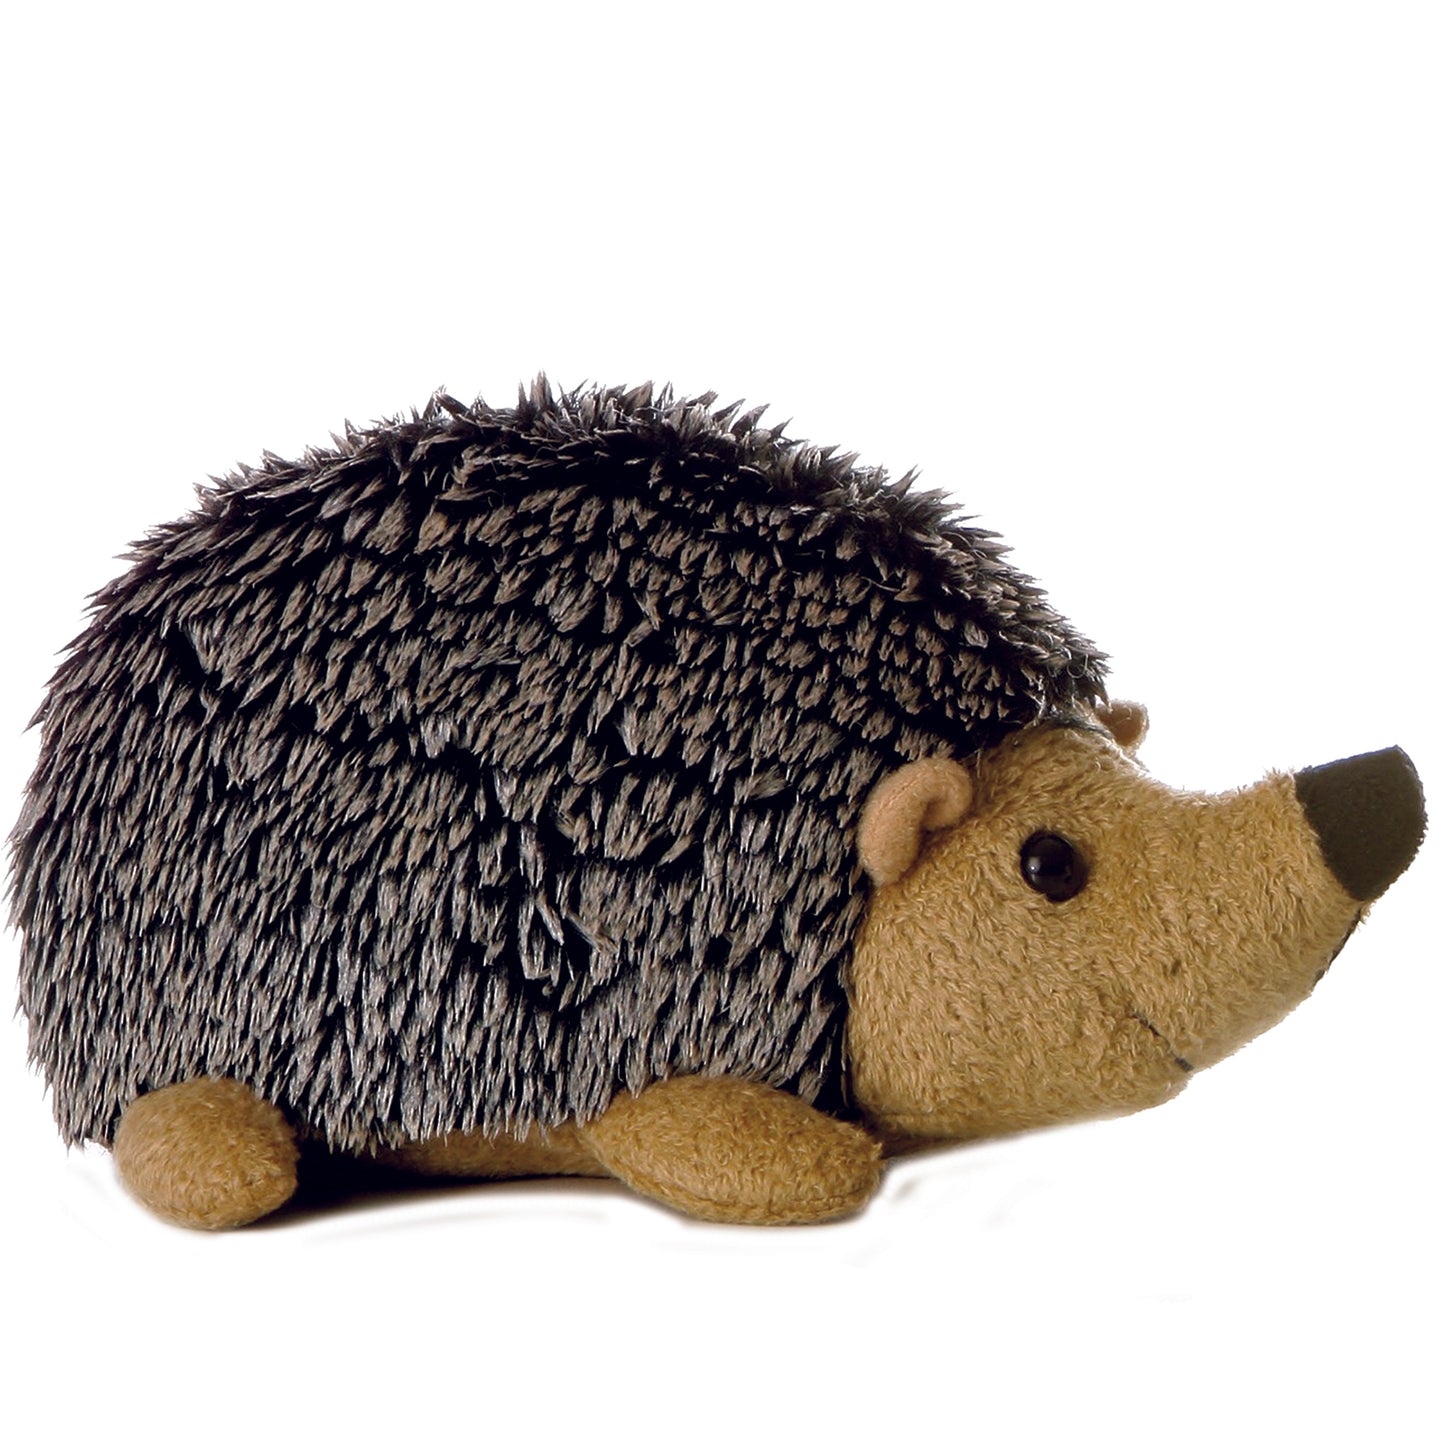 Howie Hedgehog 8"